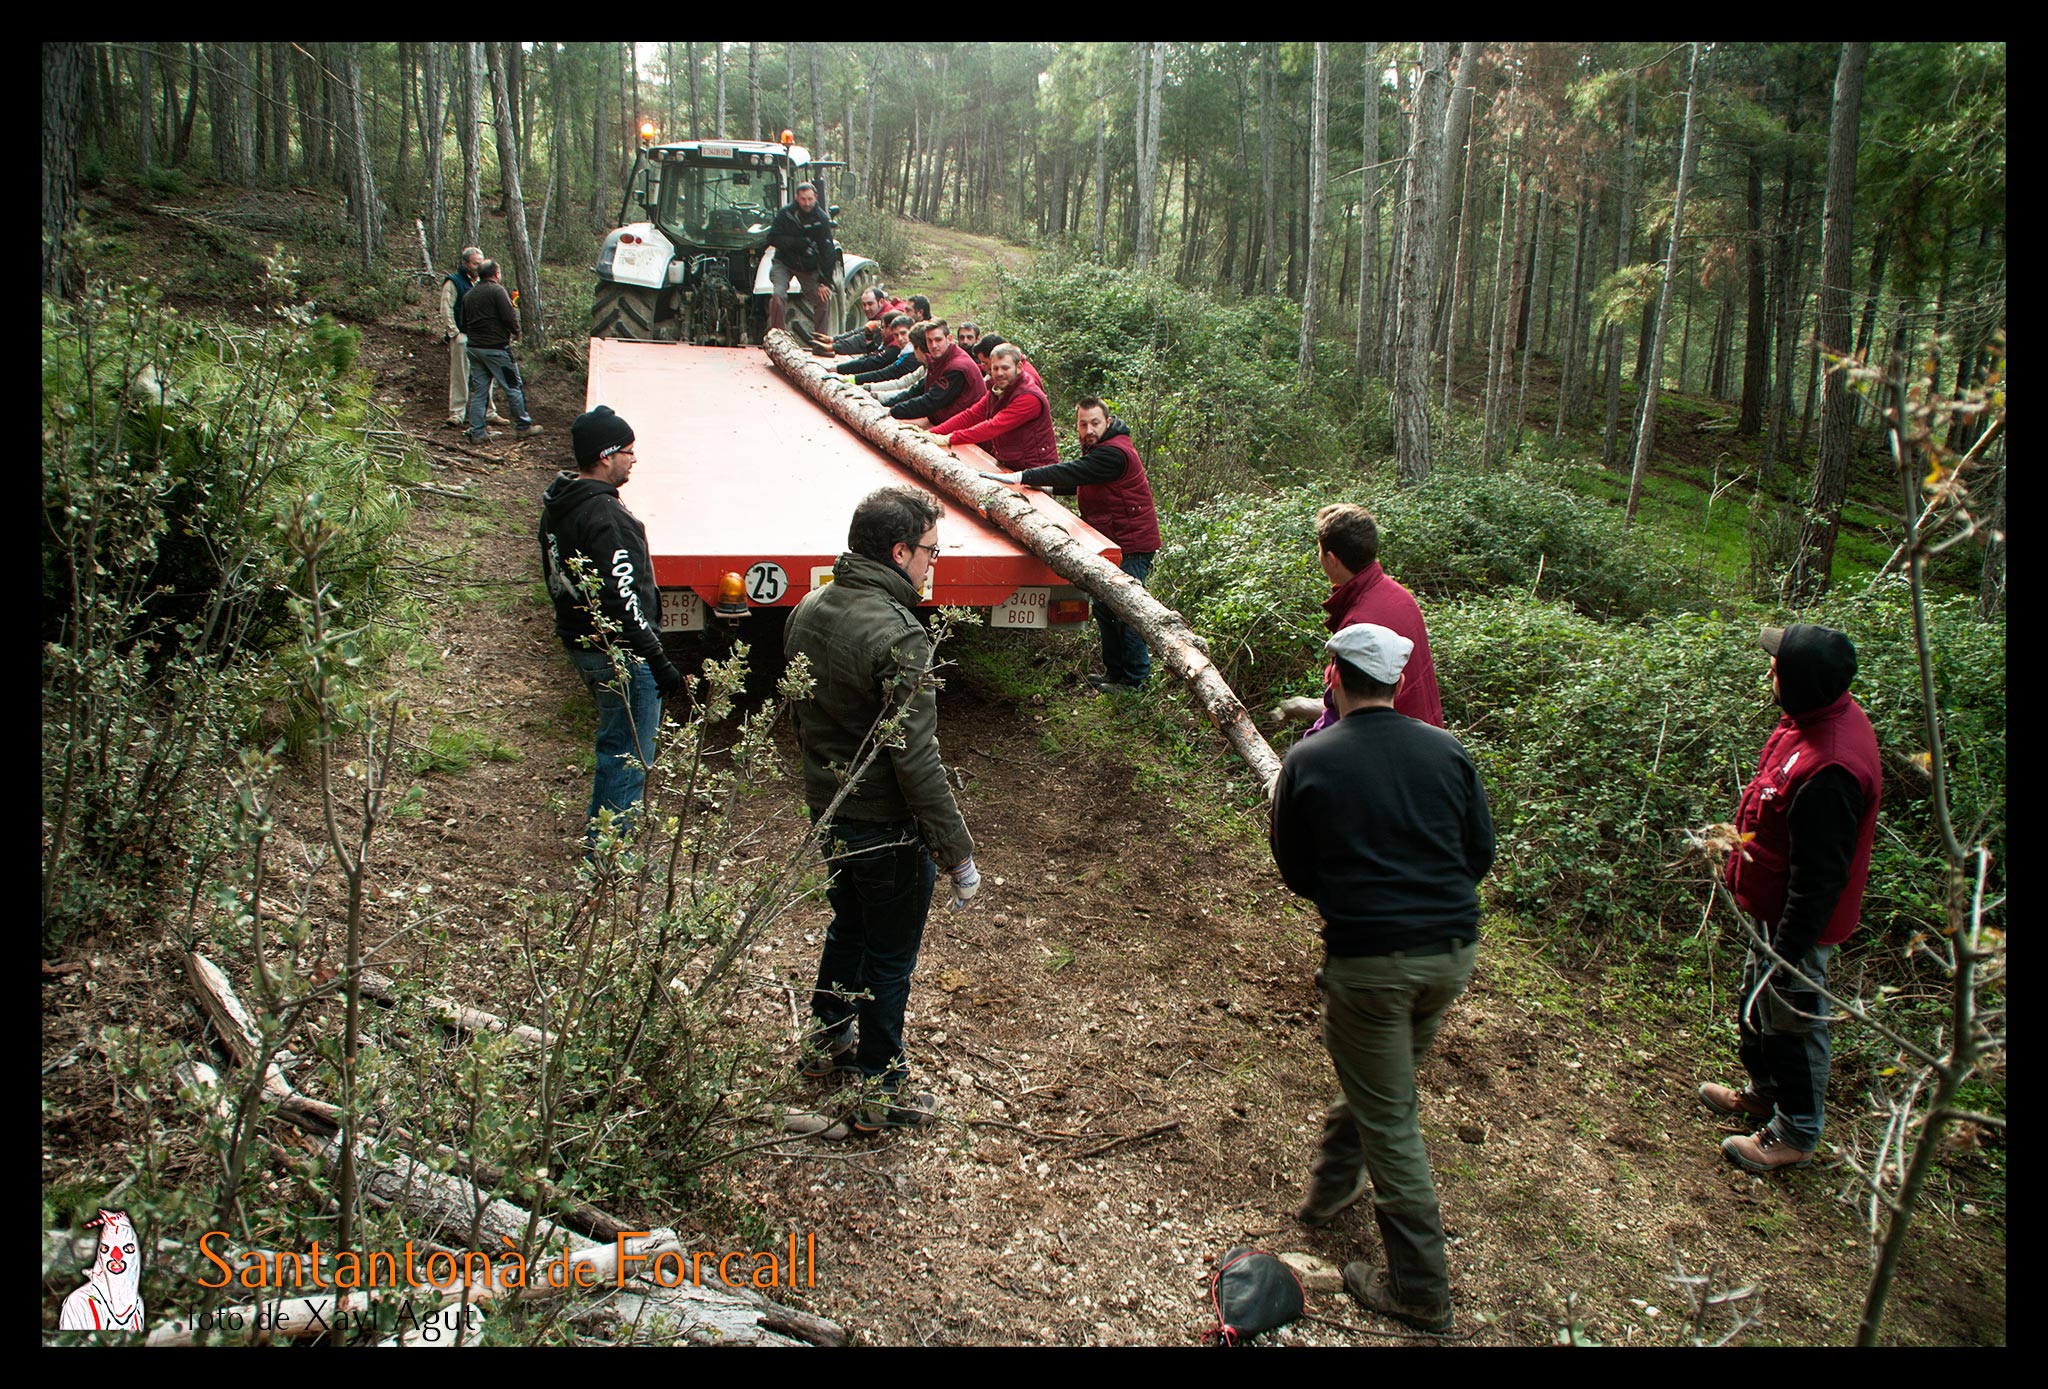 Con cuidado, los miembros de la Santantonà irán cargando los pinos en el tractor